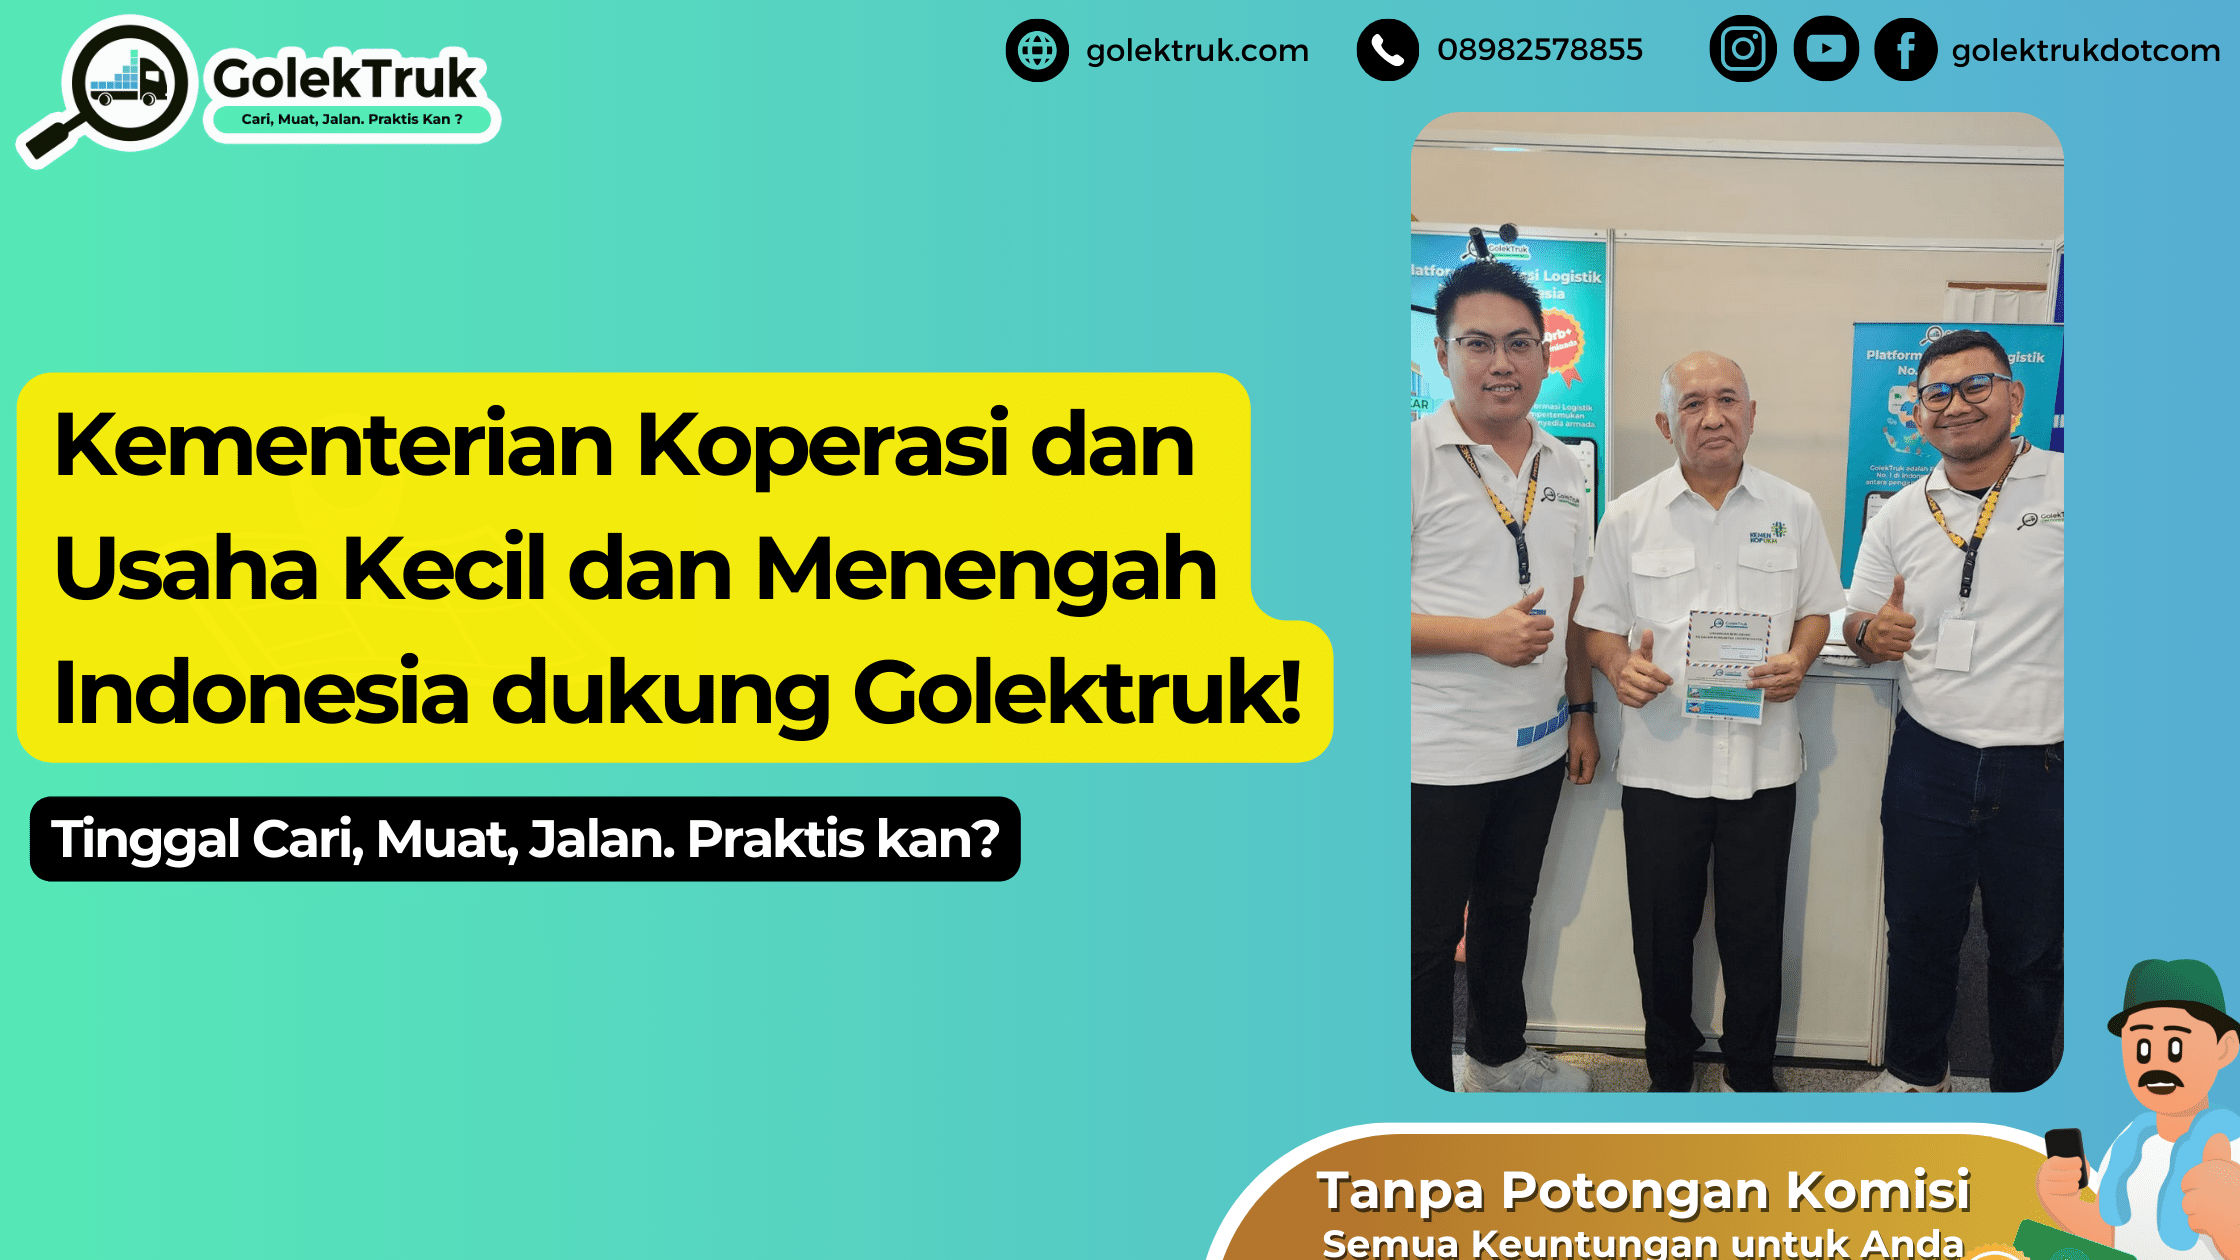 Kementerian Koperasi dan Usaha Kecil dan Menengah Indonesia dukung Golektruk!